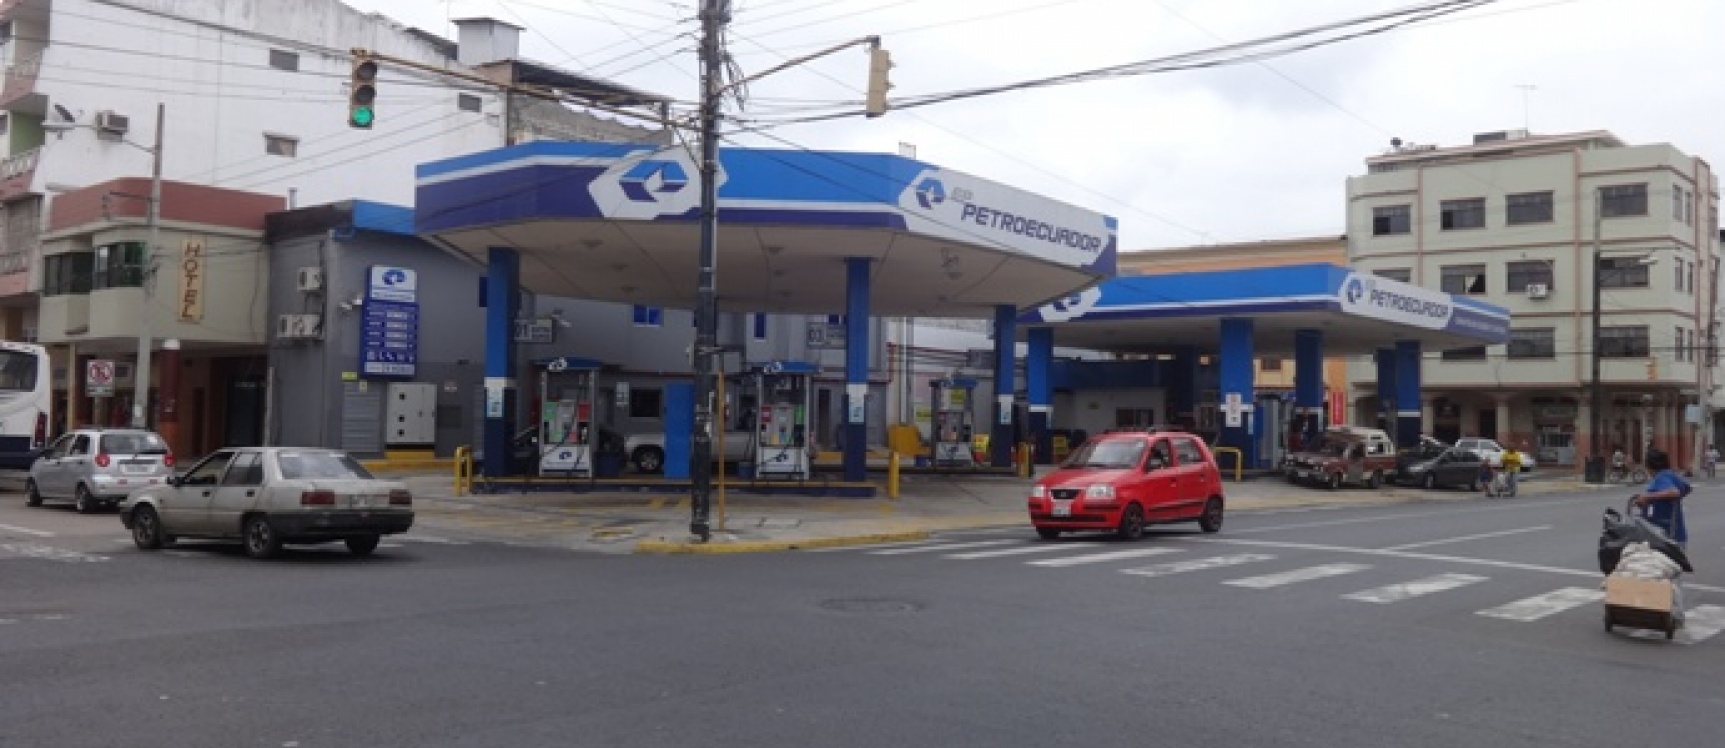 GeoBienes - Gasolinera en venta ubicada en la zona Centro de Guayaquil Ecuador - Plusvalia Guayaquil Casas de venta y alquiler Inmobiliaria Ecuador